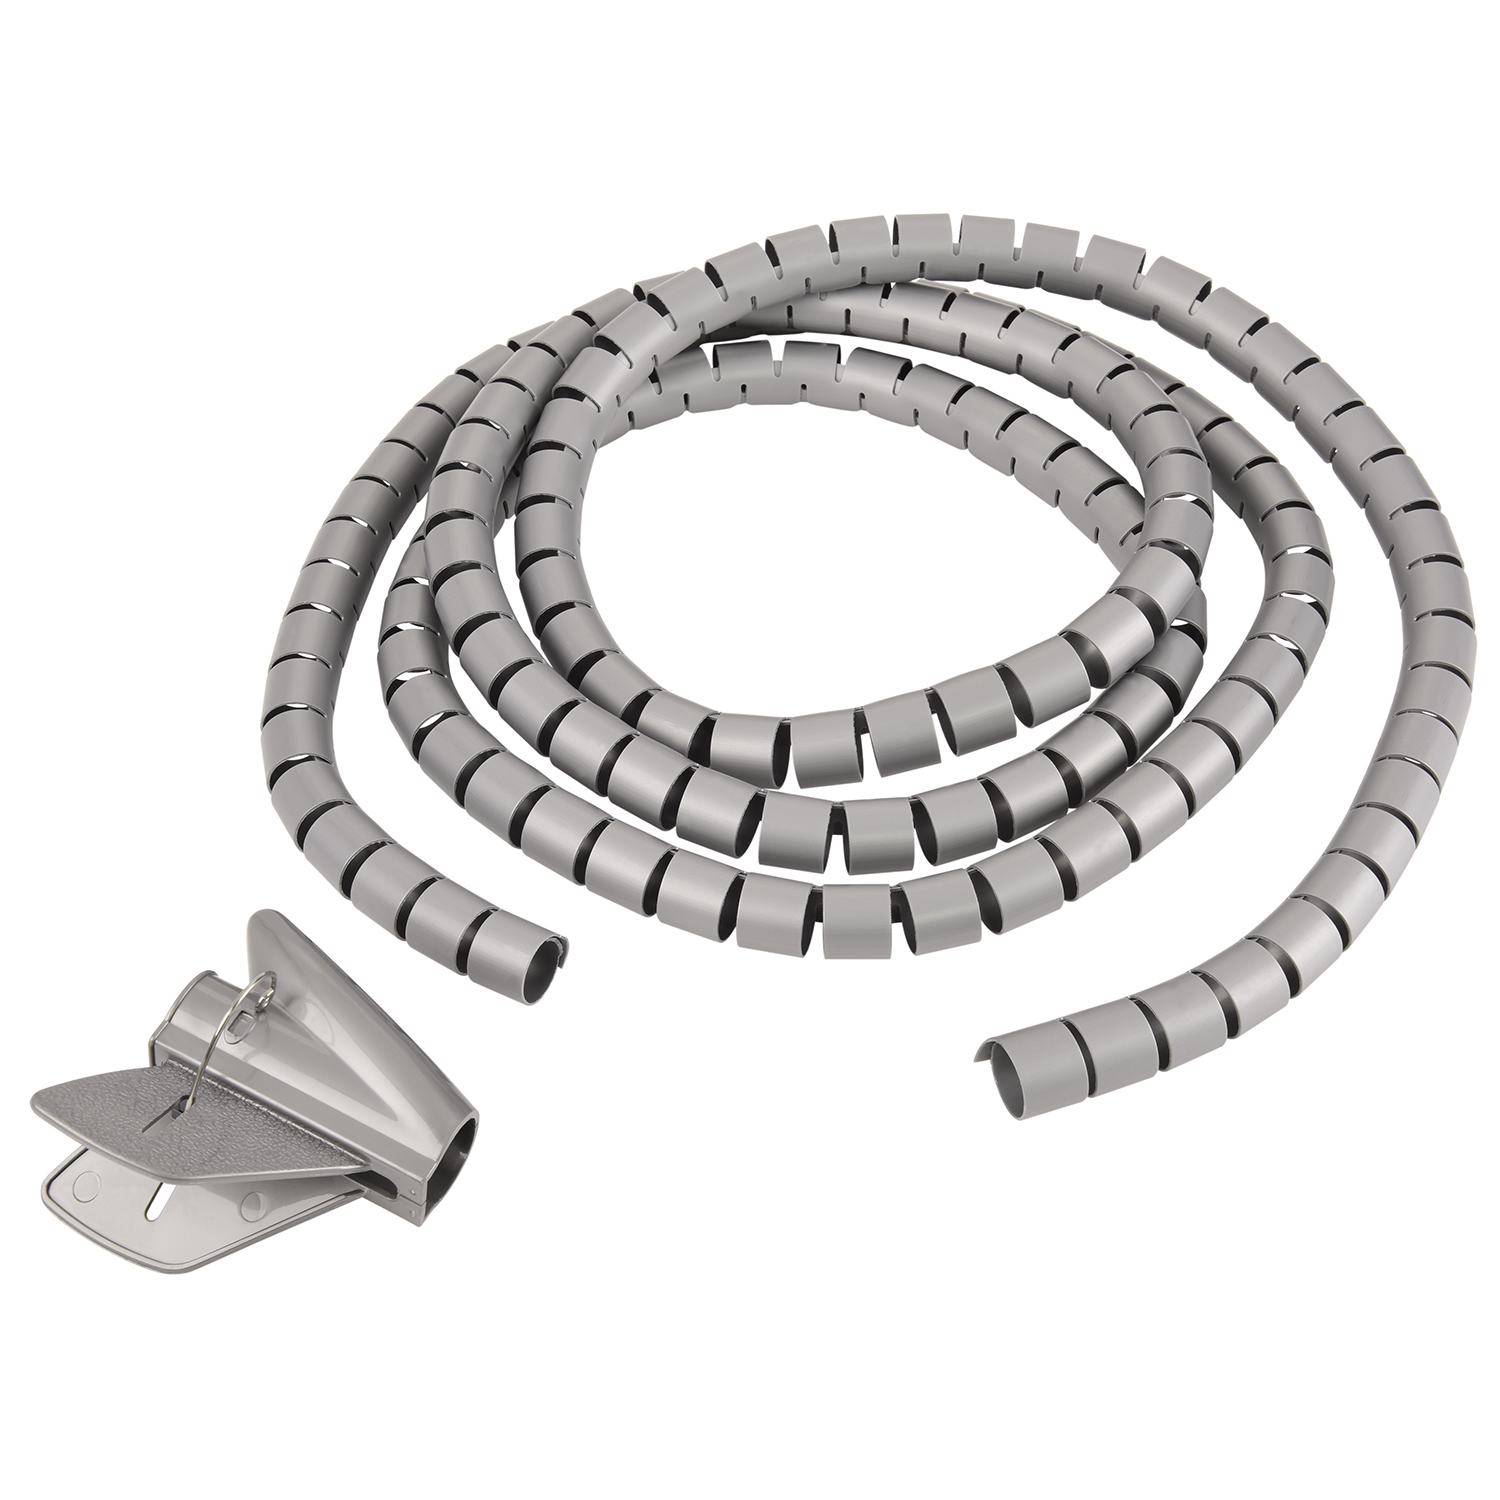 Kabelschlauch, Spiral-Kabelschlauch Premium Silber Silber, 1,5m TPFNET Einfädelhilfe, 20mm, mit